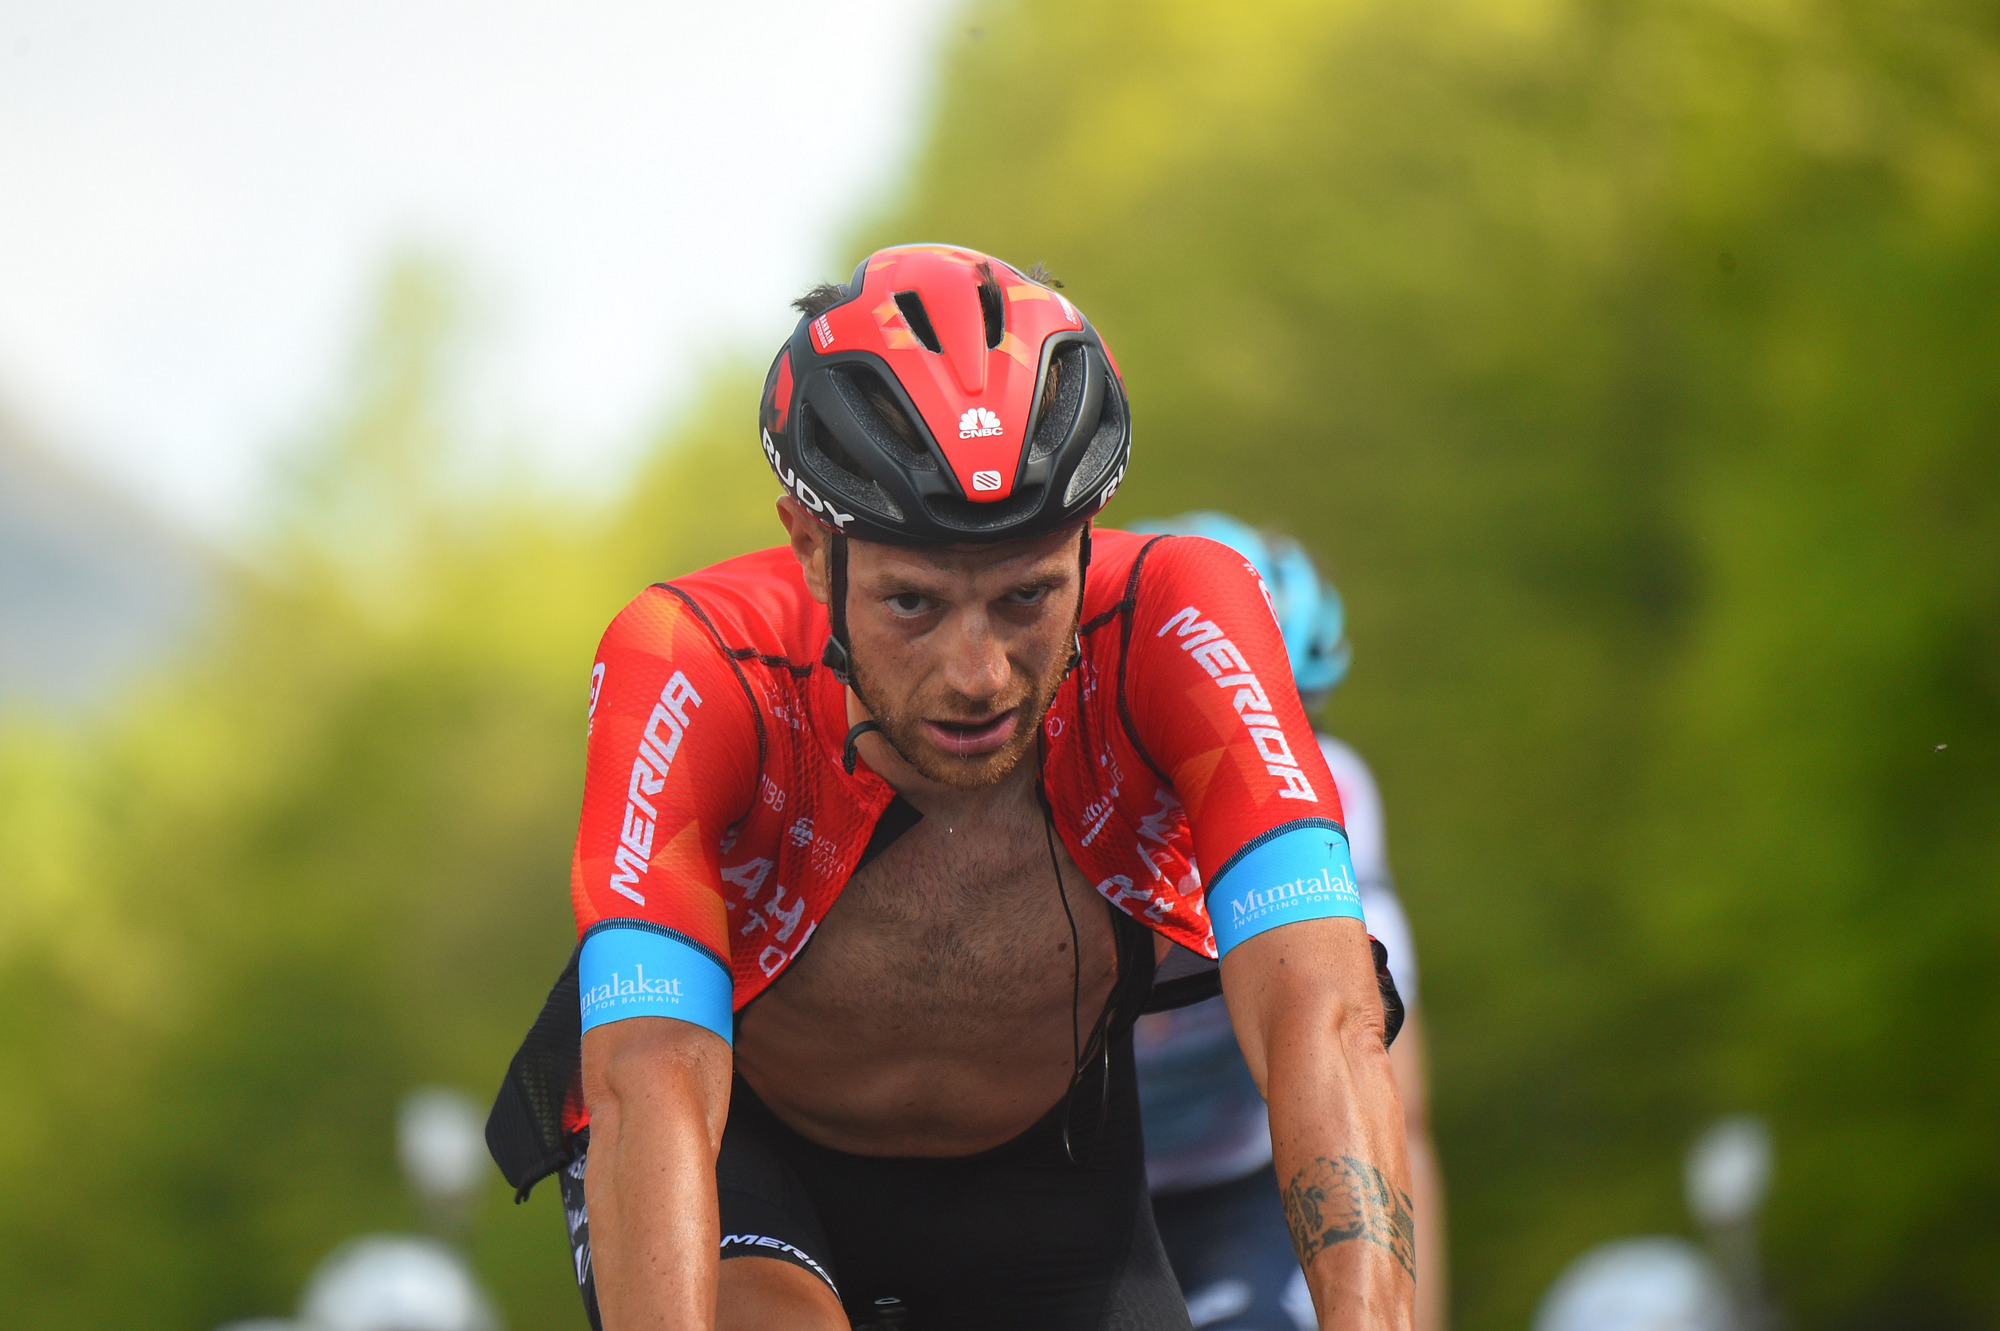 Giro d'Italia: Egan Bernal survives as Simon Yates wins stage 19 ...